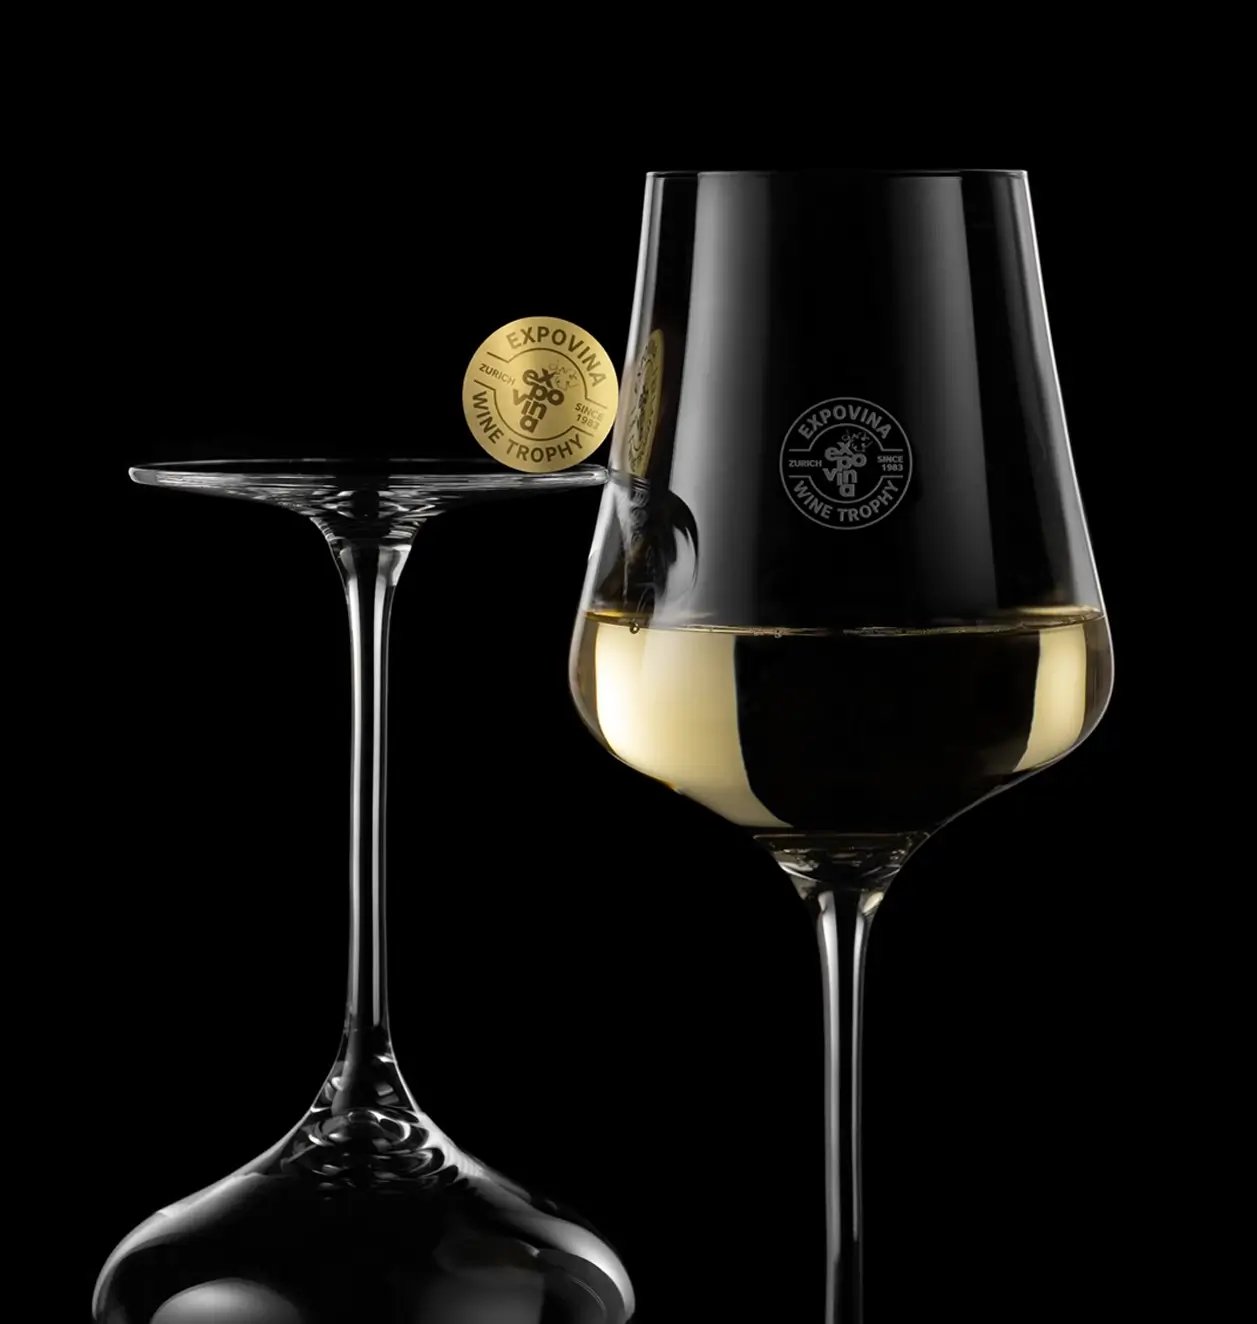 Expovina Wine Trophy Branding 